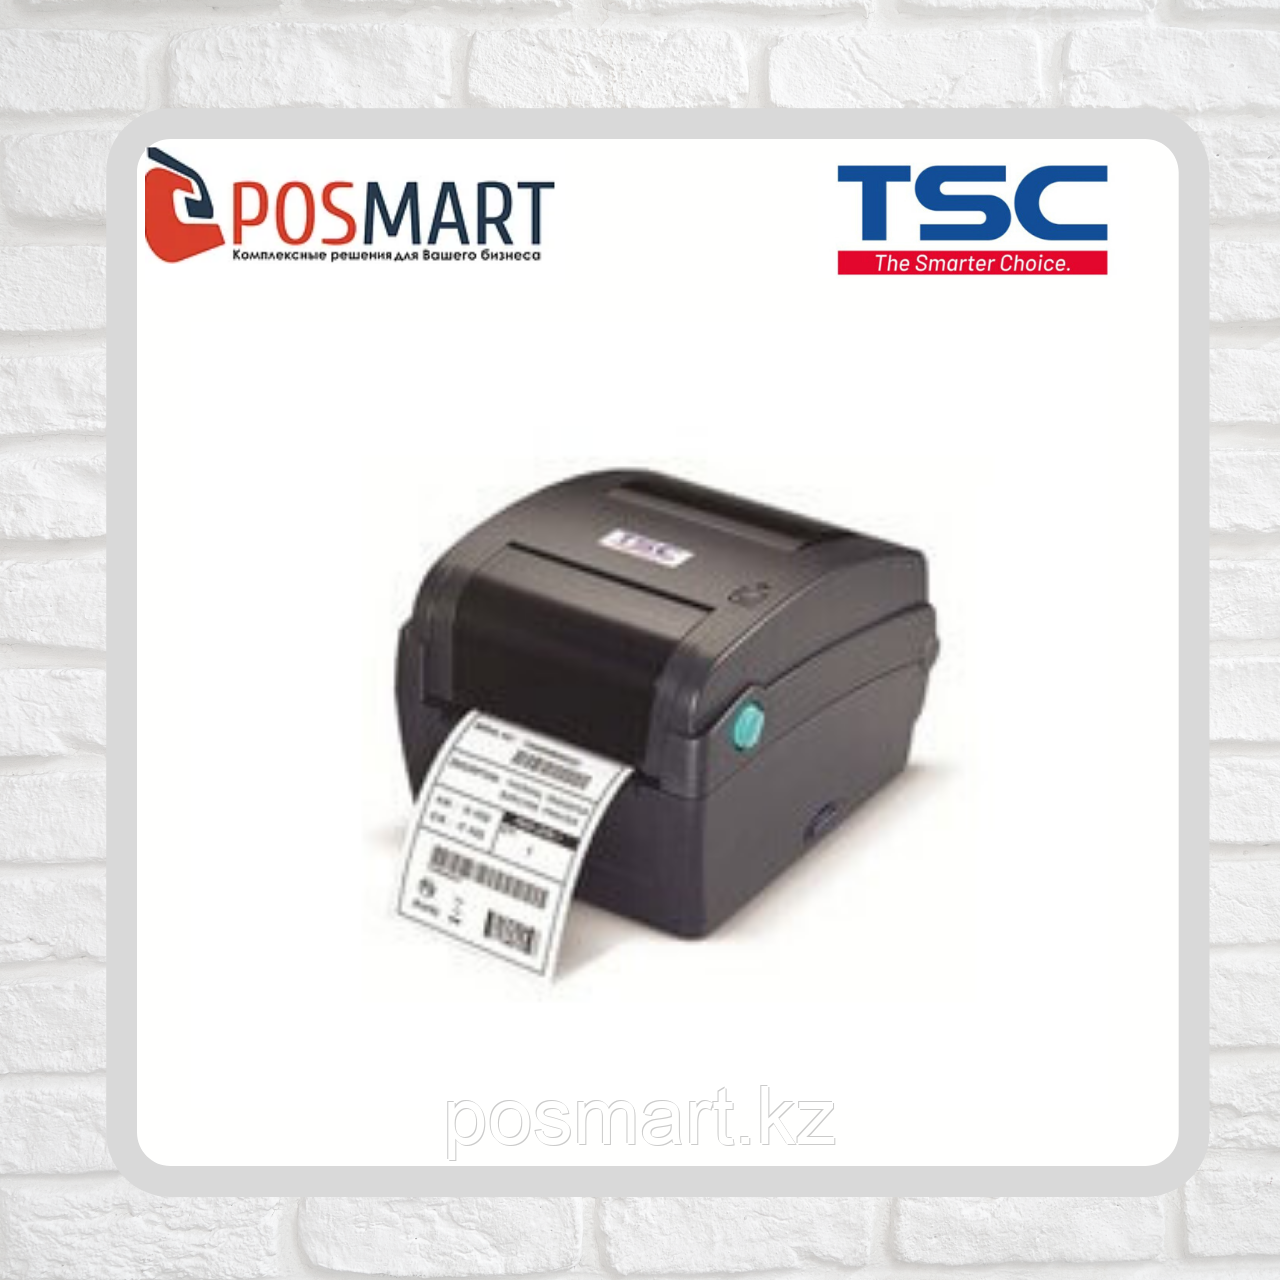 Термотрансферный принтер TSC TTP-245C, фото 1